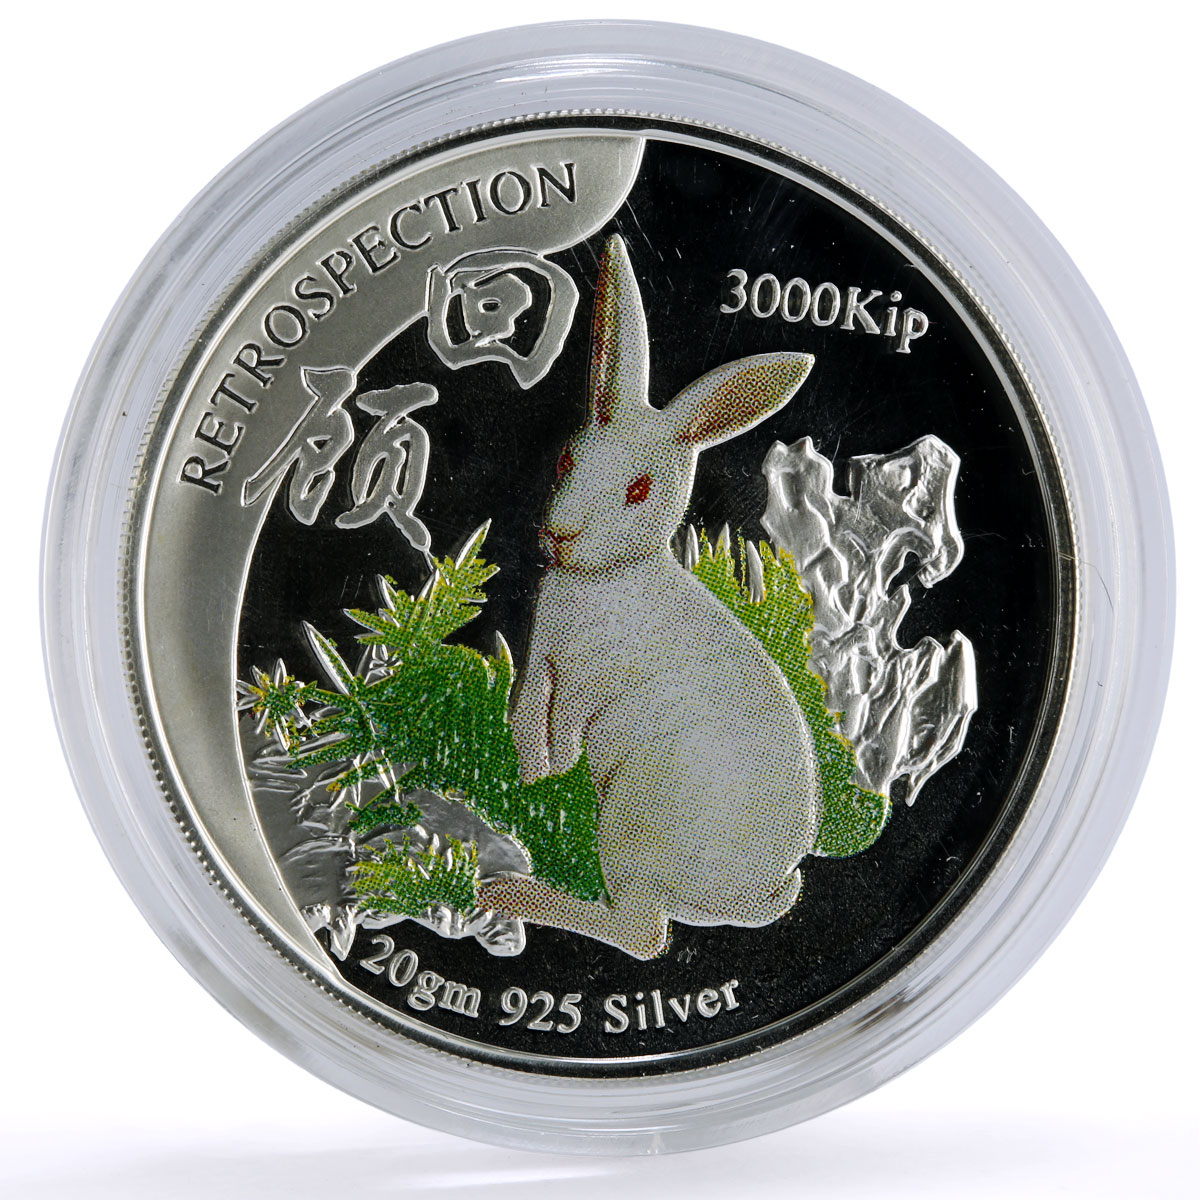 Laos 3000 kip Lunar Calendar Year of the Rabbit Retrospection silver coin 1999